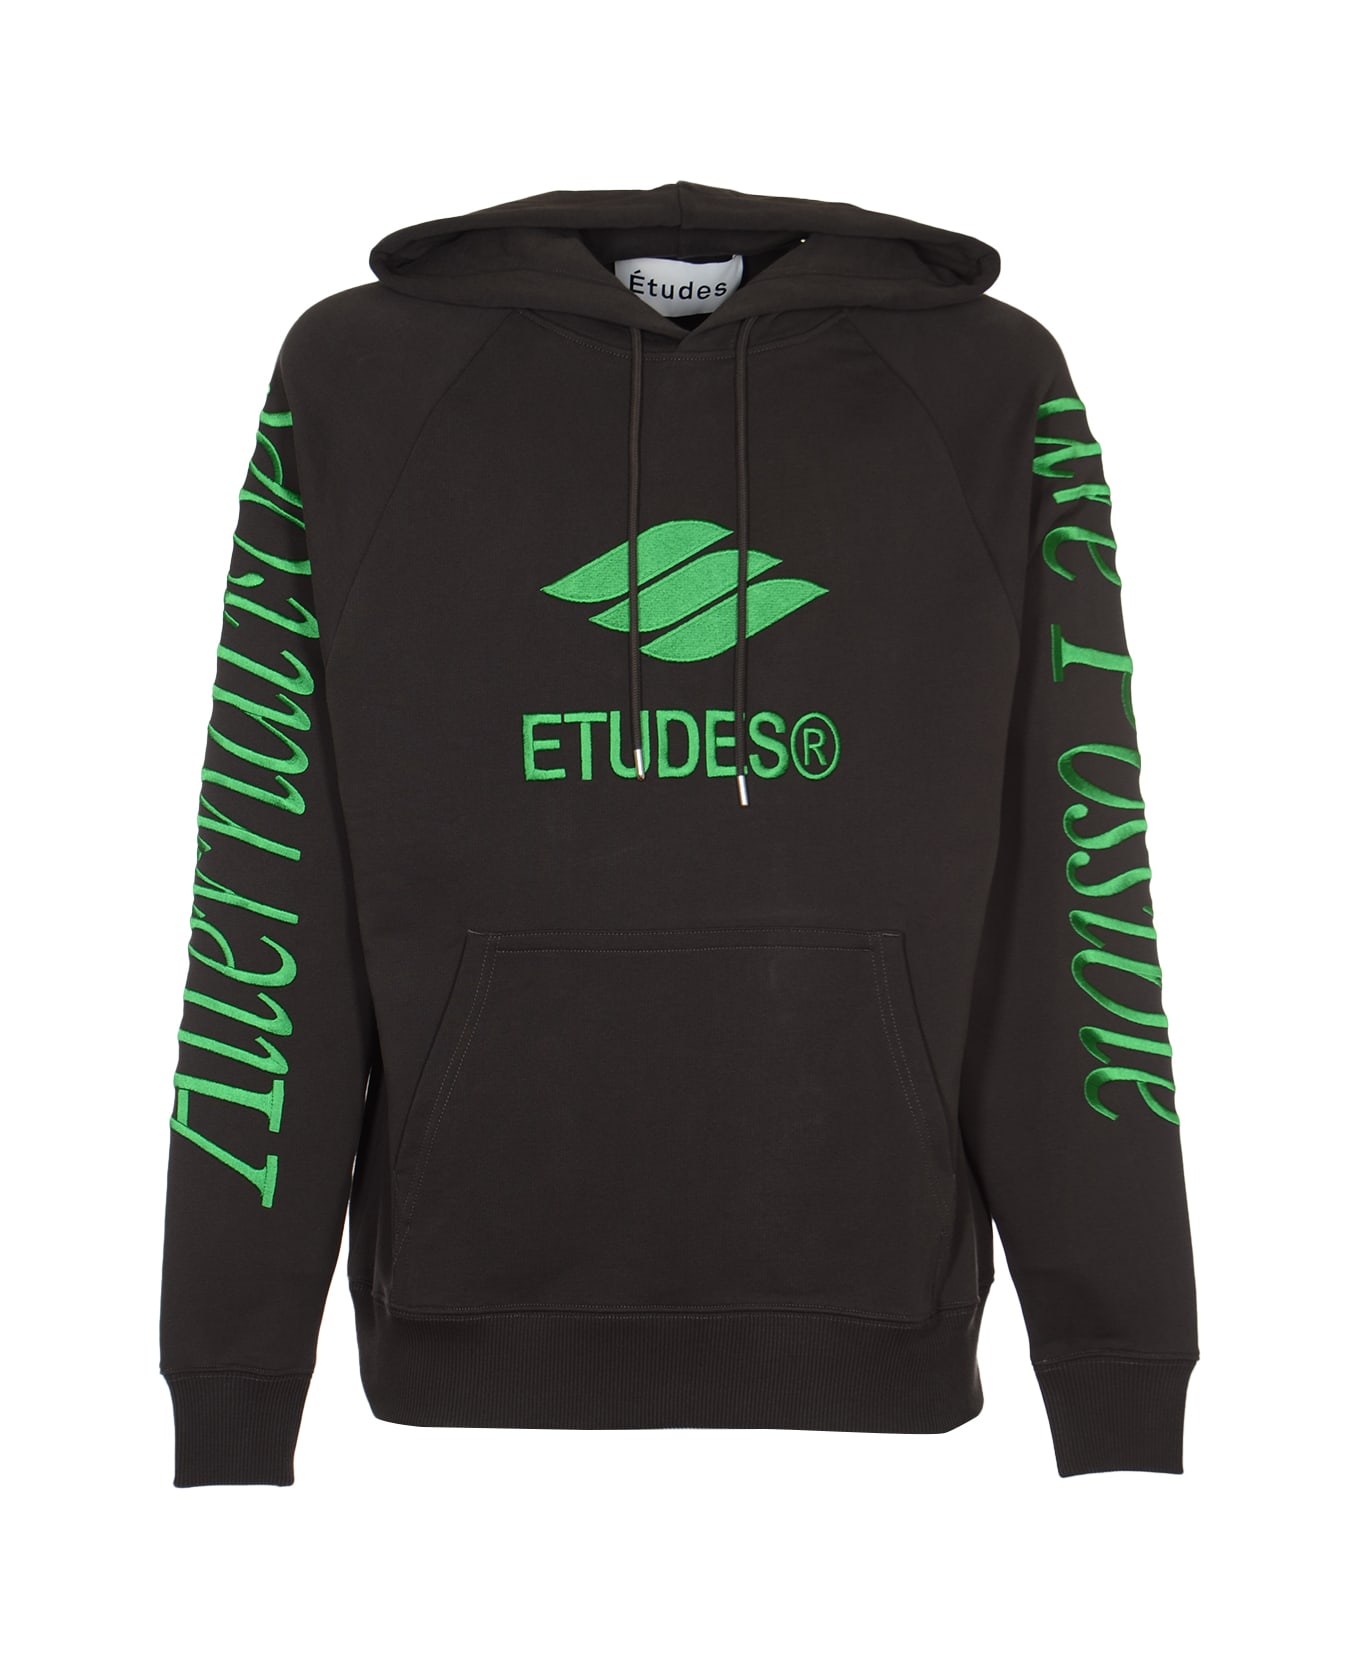 Études Racing Eco Sweatshirt - Nero フリース